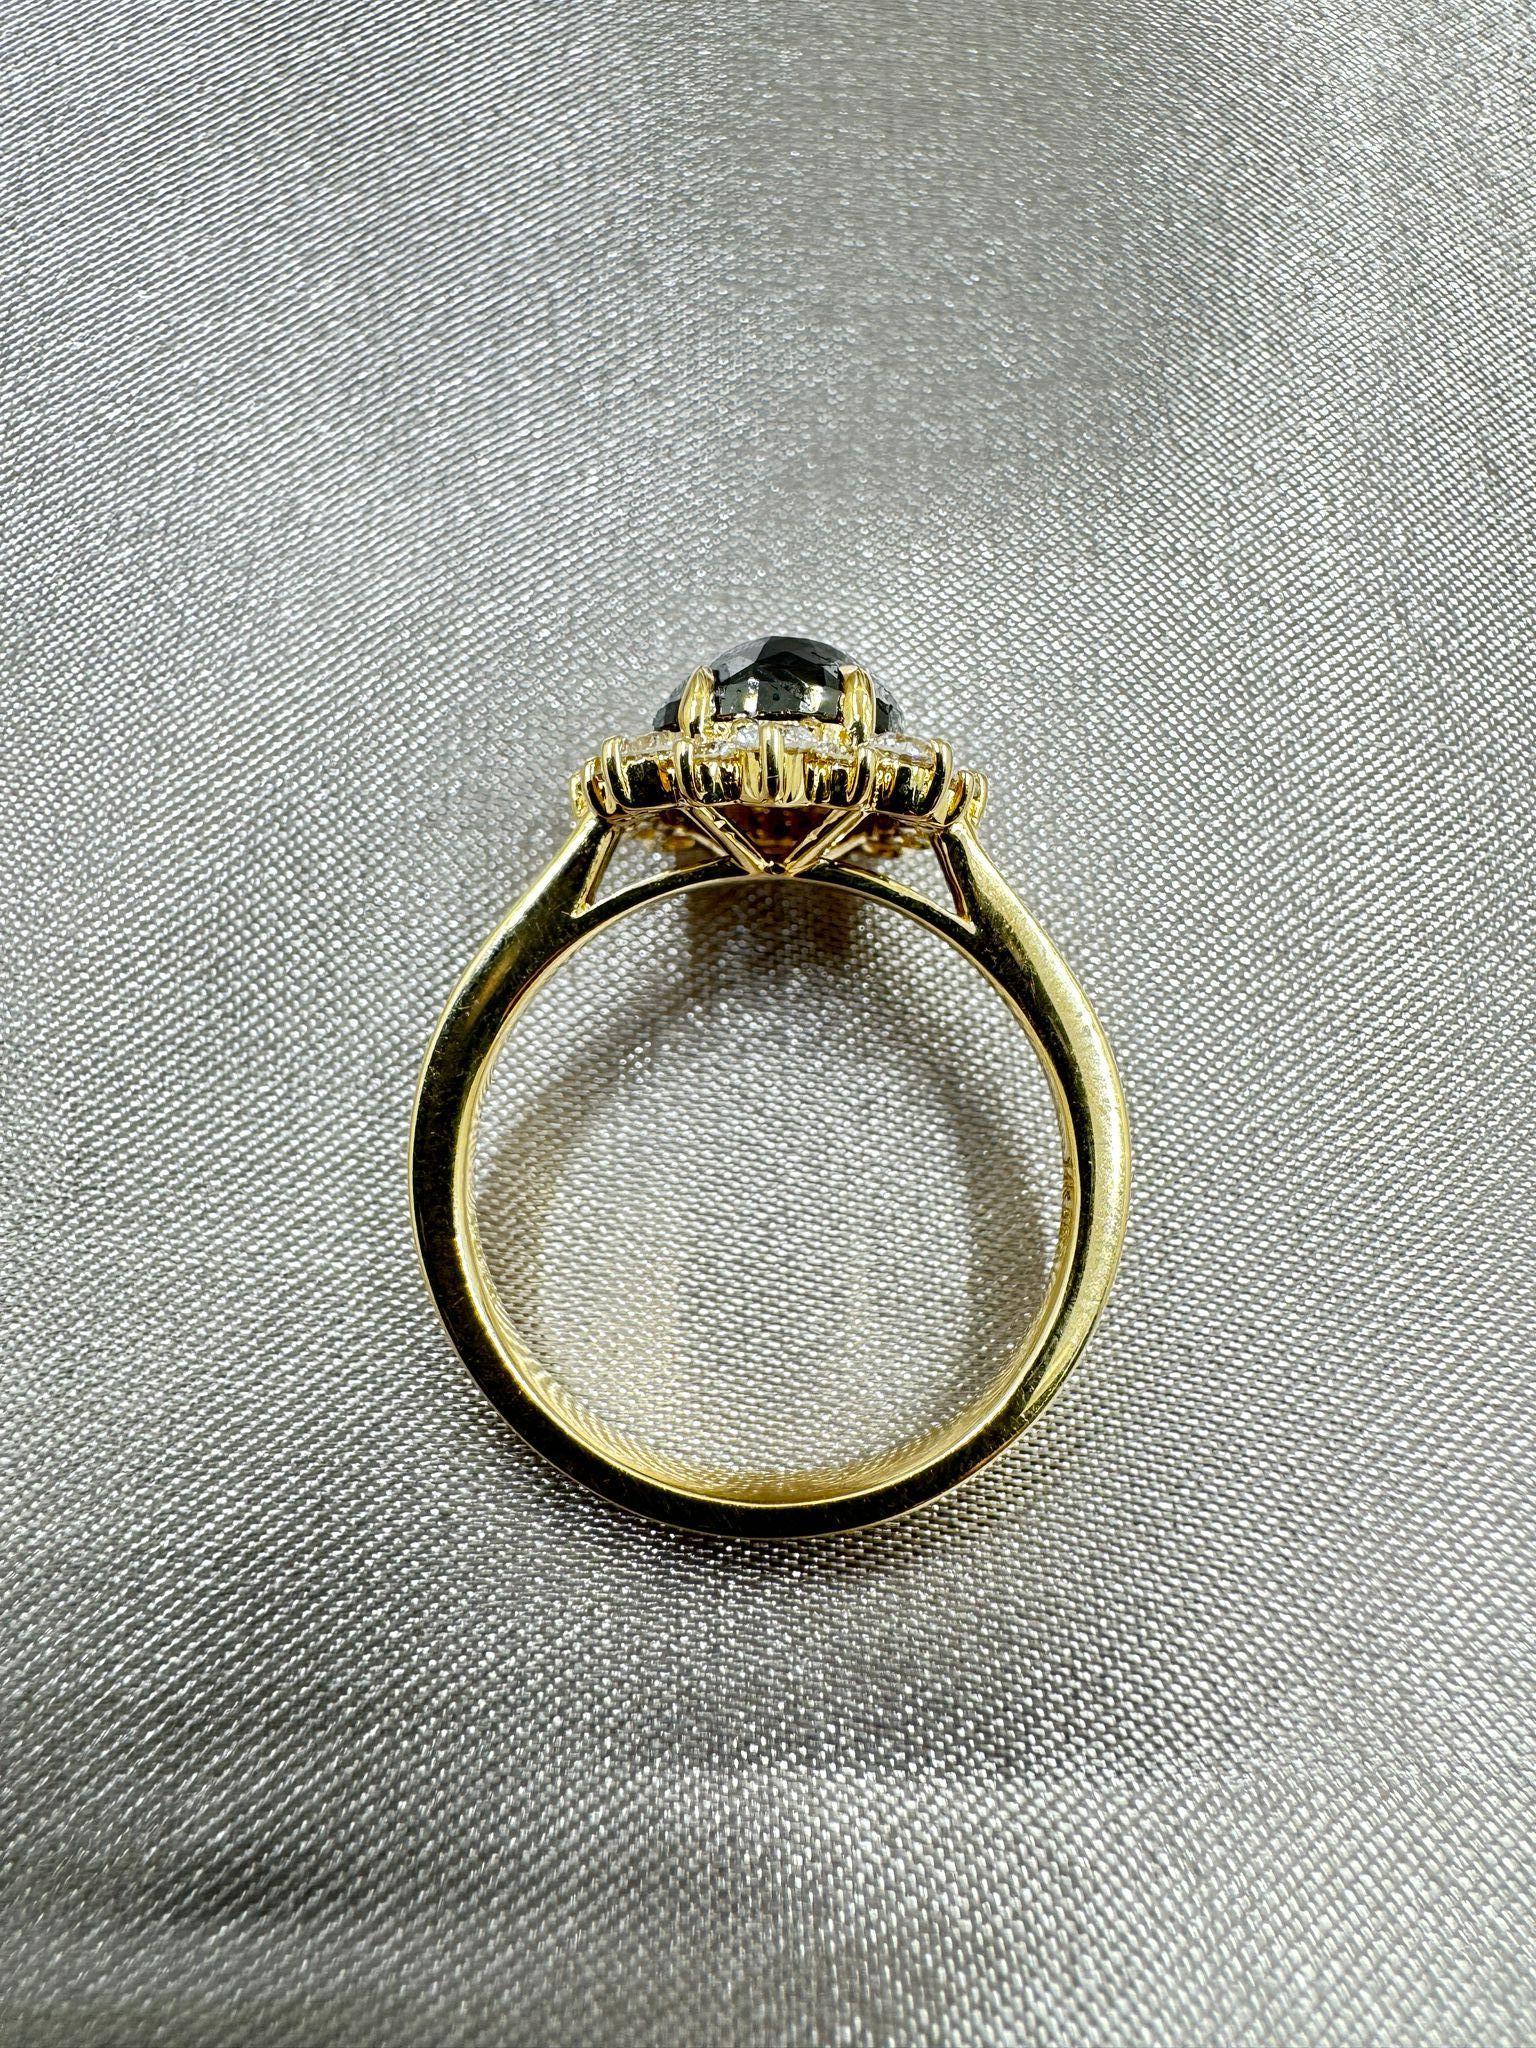 Rose Cut IGI CERTIFIED Vintage 2.27 Carat Black Diamond Ring in 14 Karat Yellow Gold